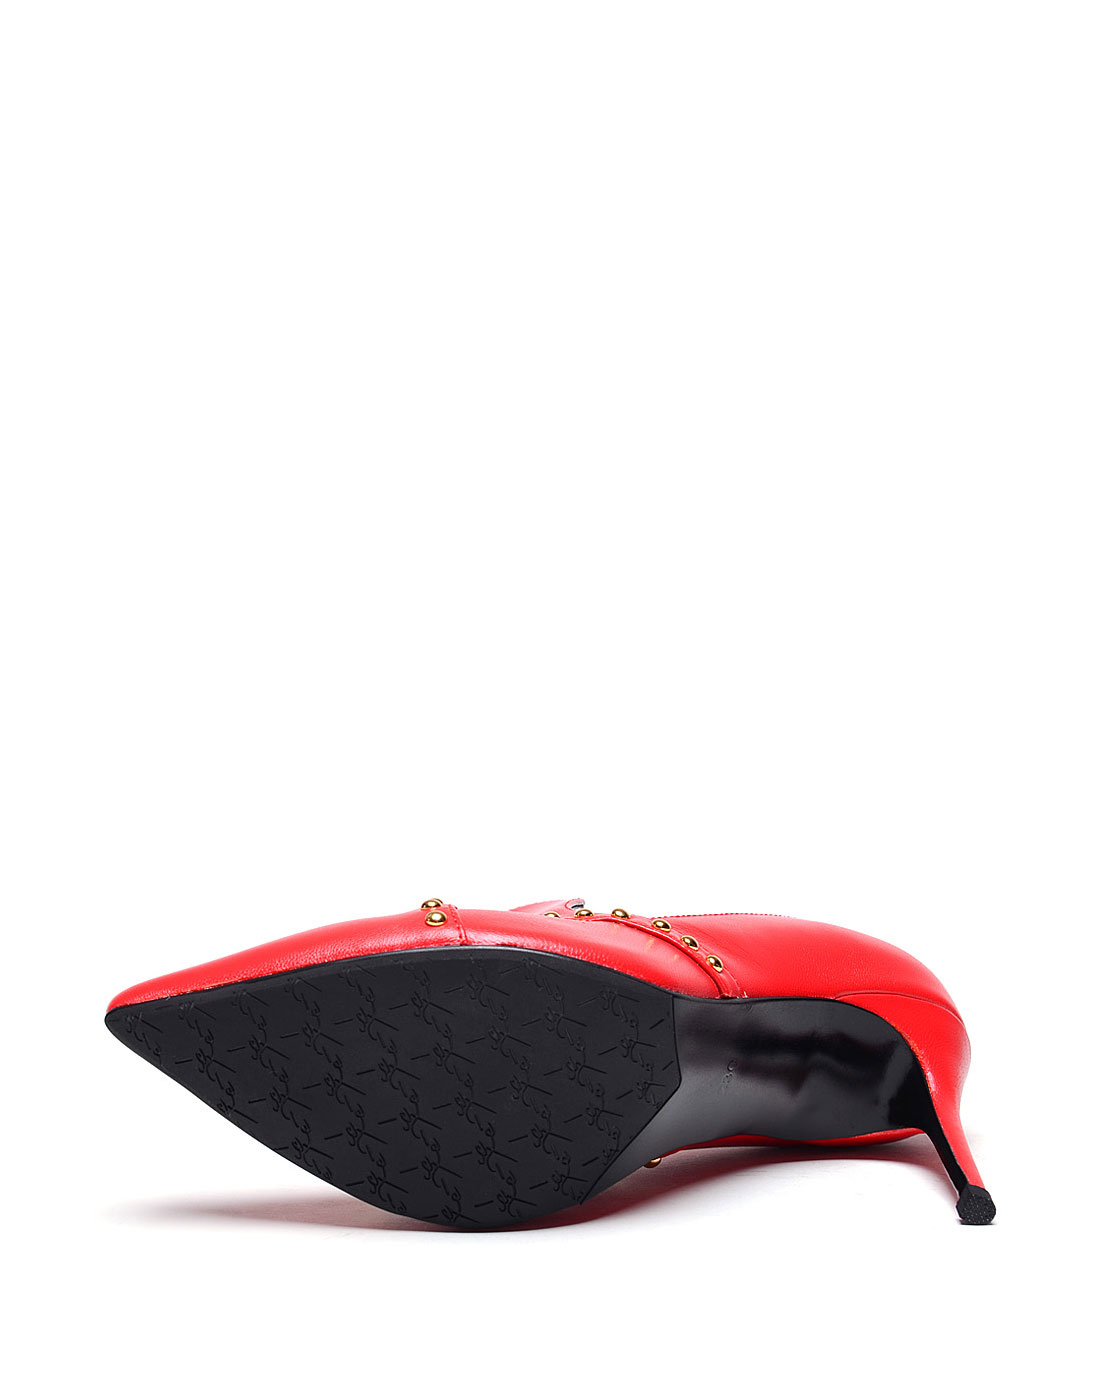 [FOXYAFOX]性感风铆钉羊皮革单鞋(尺码标准)
编号: A0209D1A99